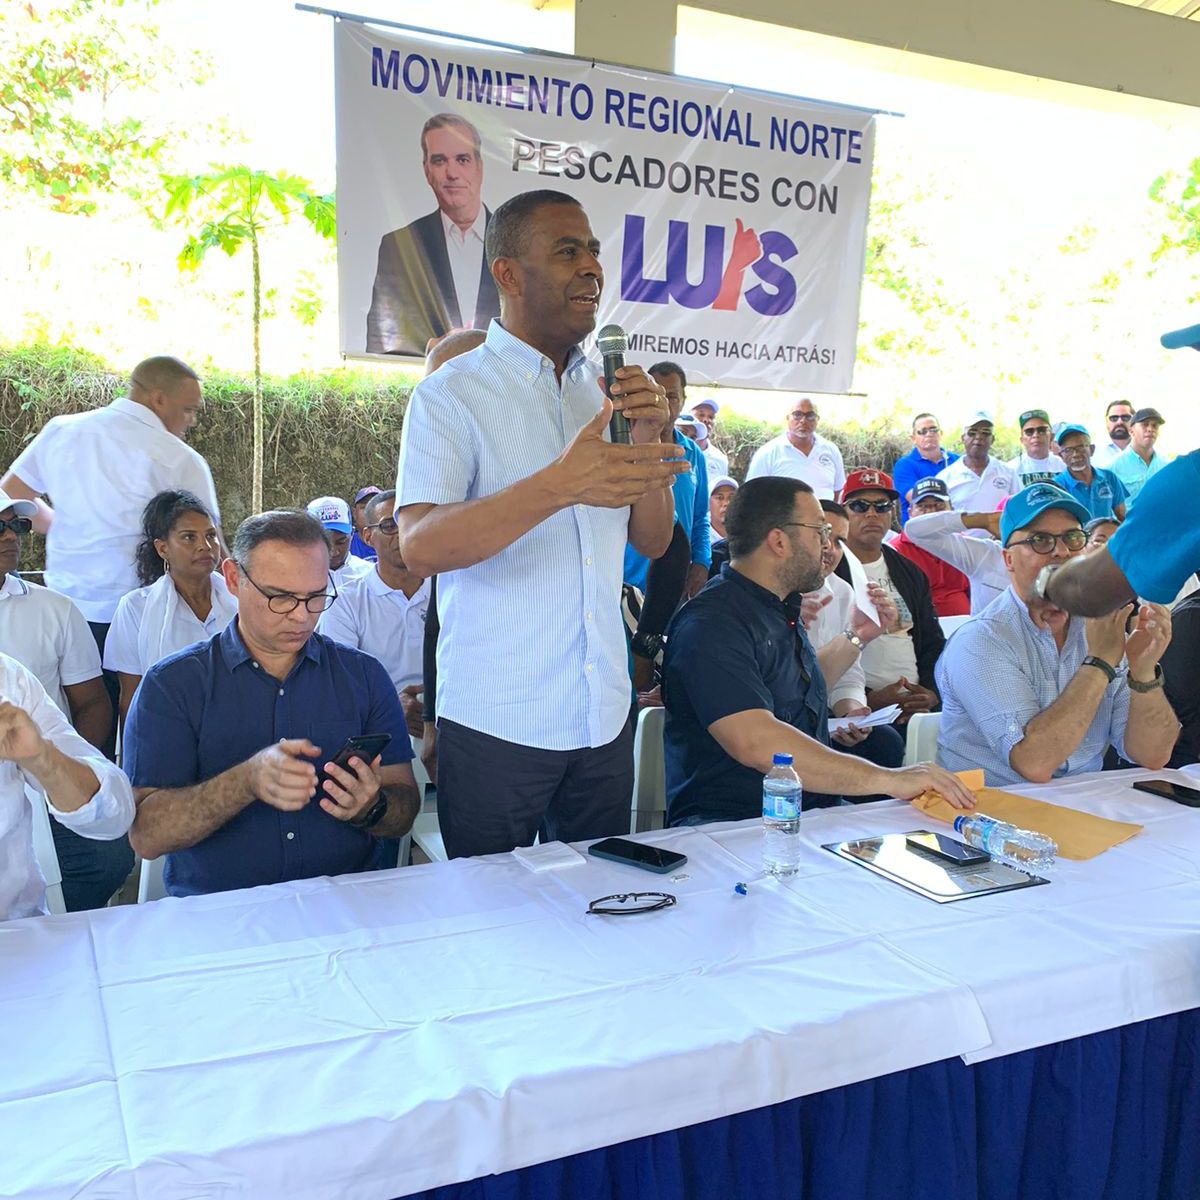 Juramentan integrantes del Movimiento Regional Norte, Pescadores con Luis –  (República Dominicana)